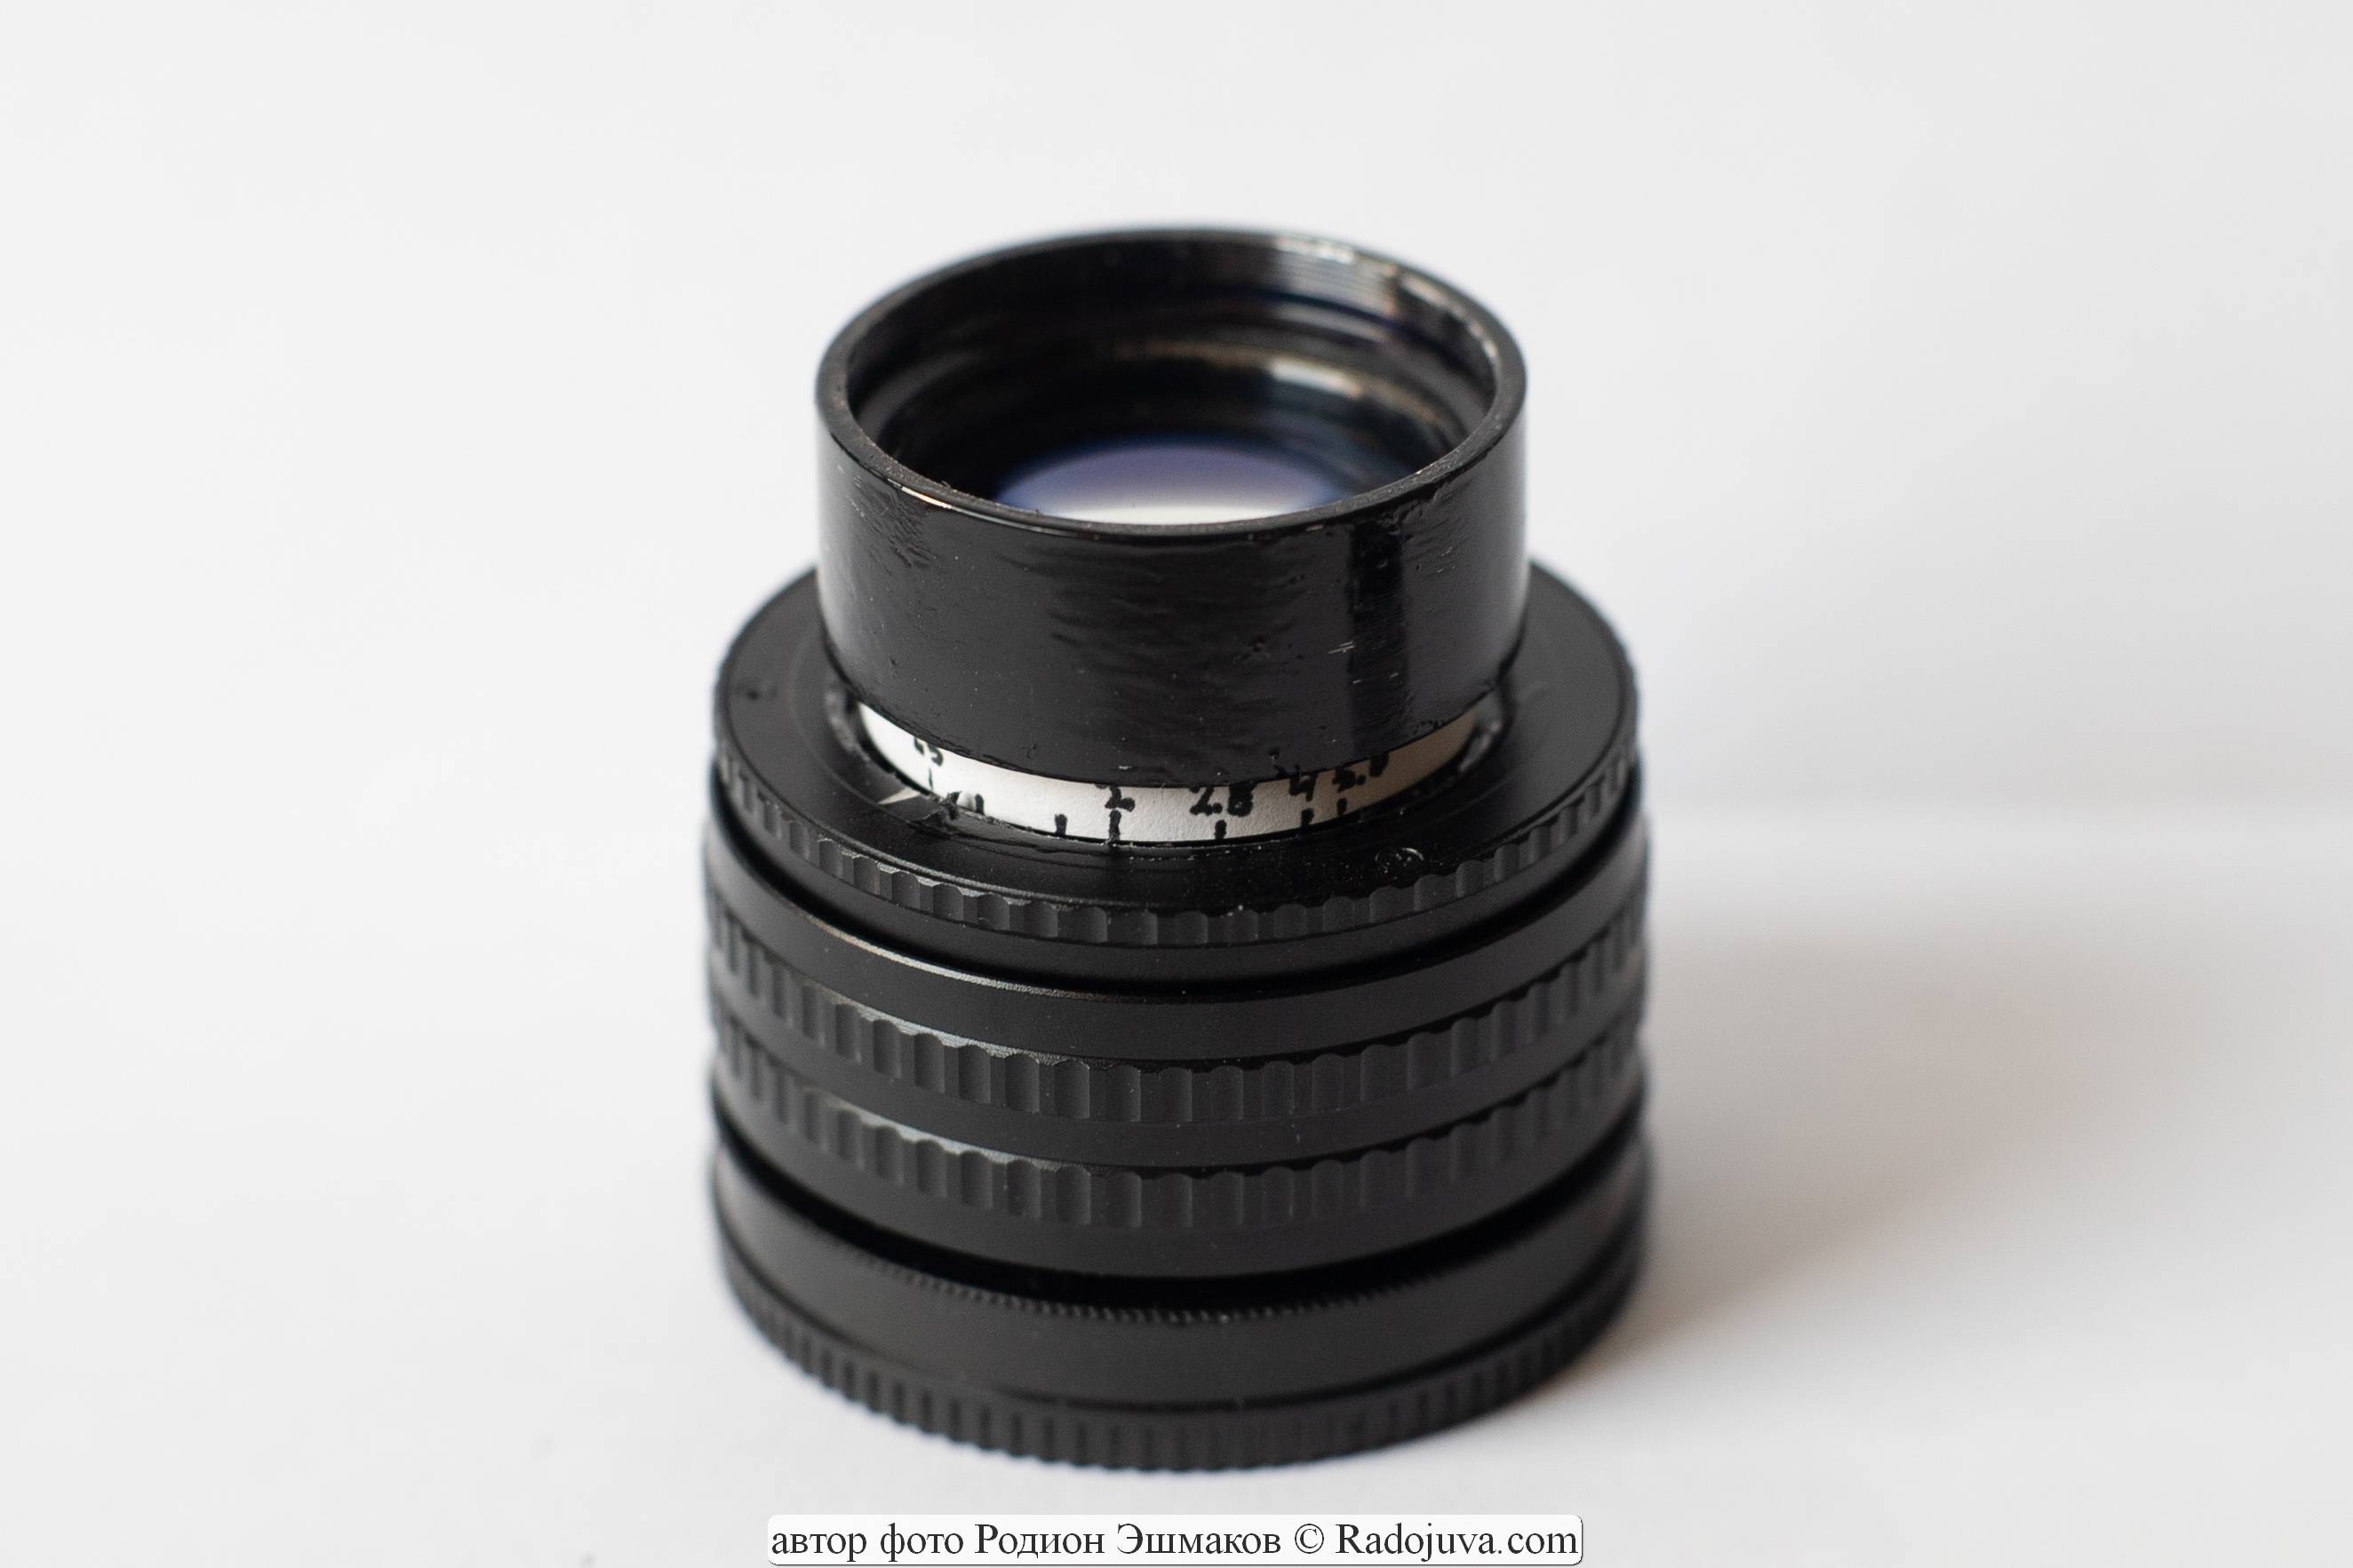 TVNO-2B lens redesigned for Sony cameras.